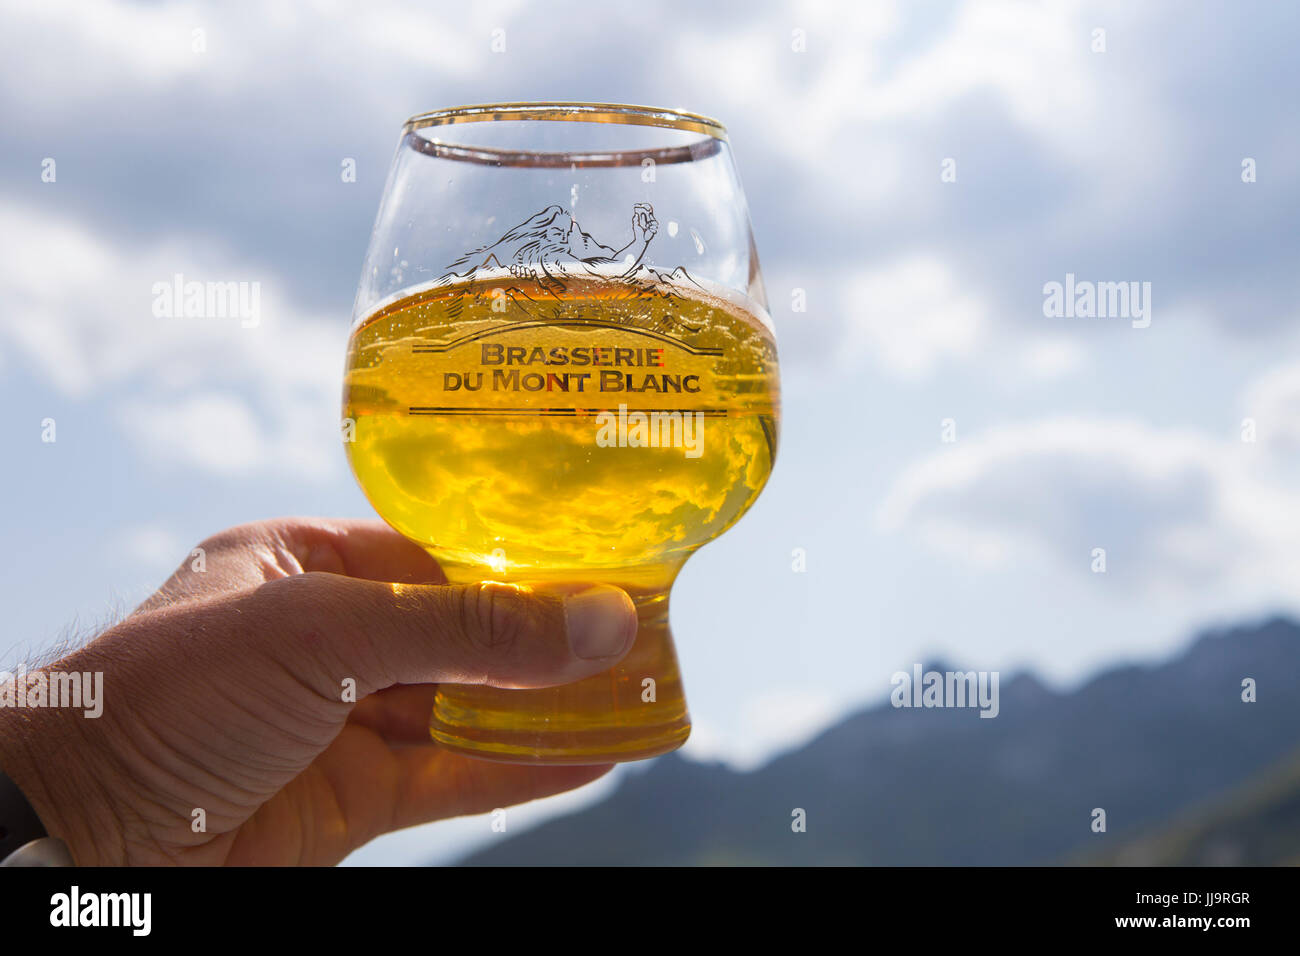 Un verre de bière artisanale (Biere du Mont Blanc) en attente pour le ciel. C'est à la fin du tour du Mont Blanc, un classique trekking autour du sommet le plus élevé des Alpes, qui passe par la France, l'Italie et la Suisse. Banque D'Images